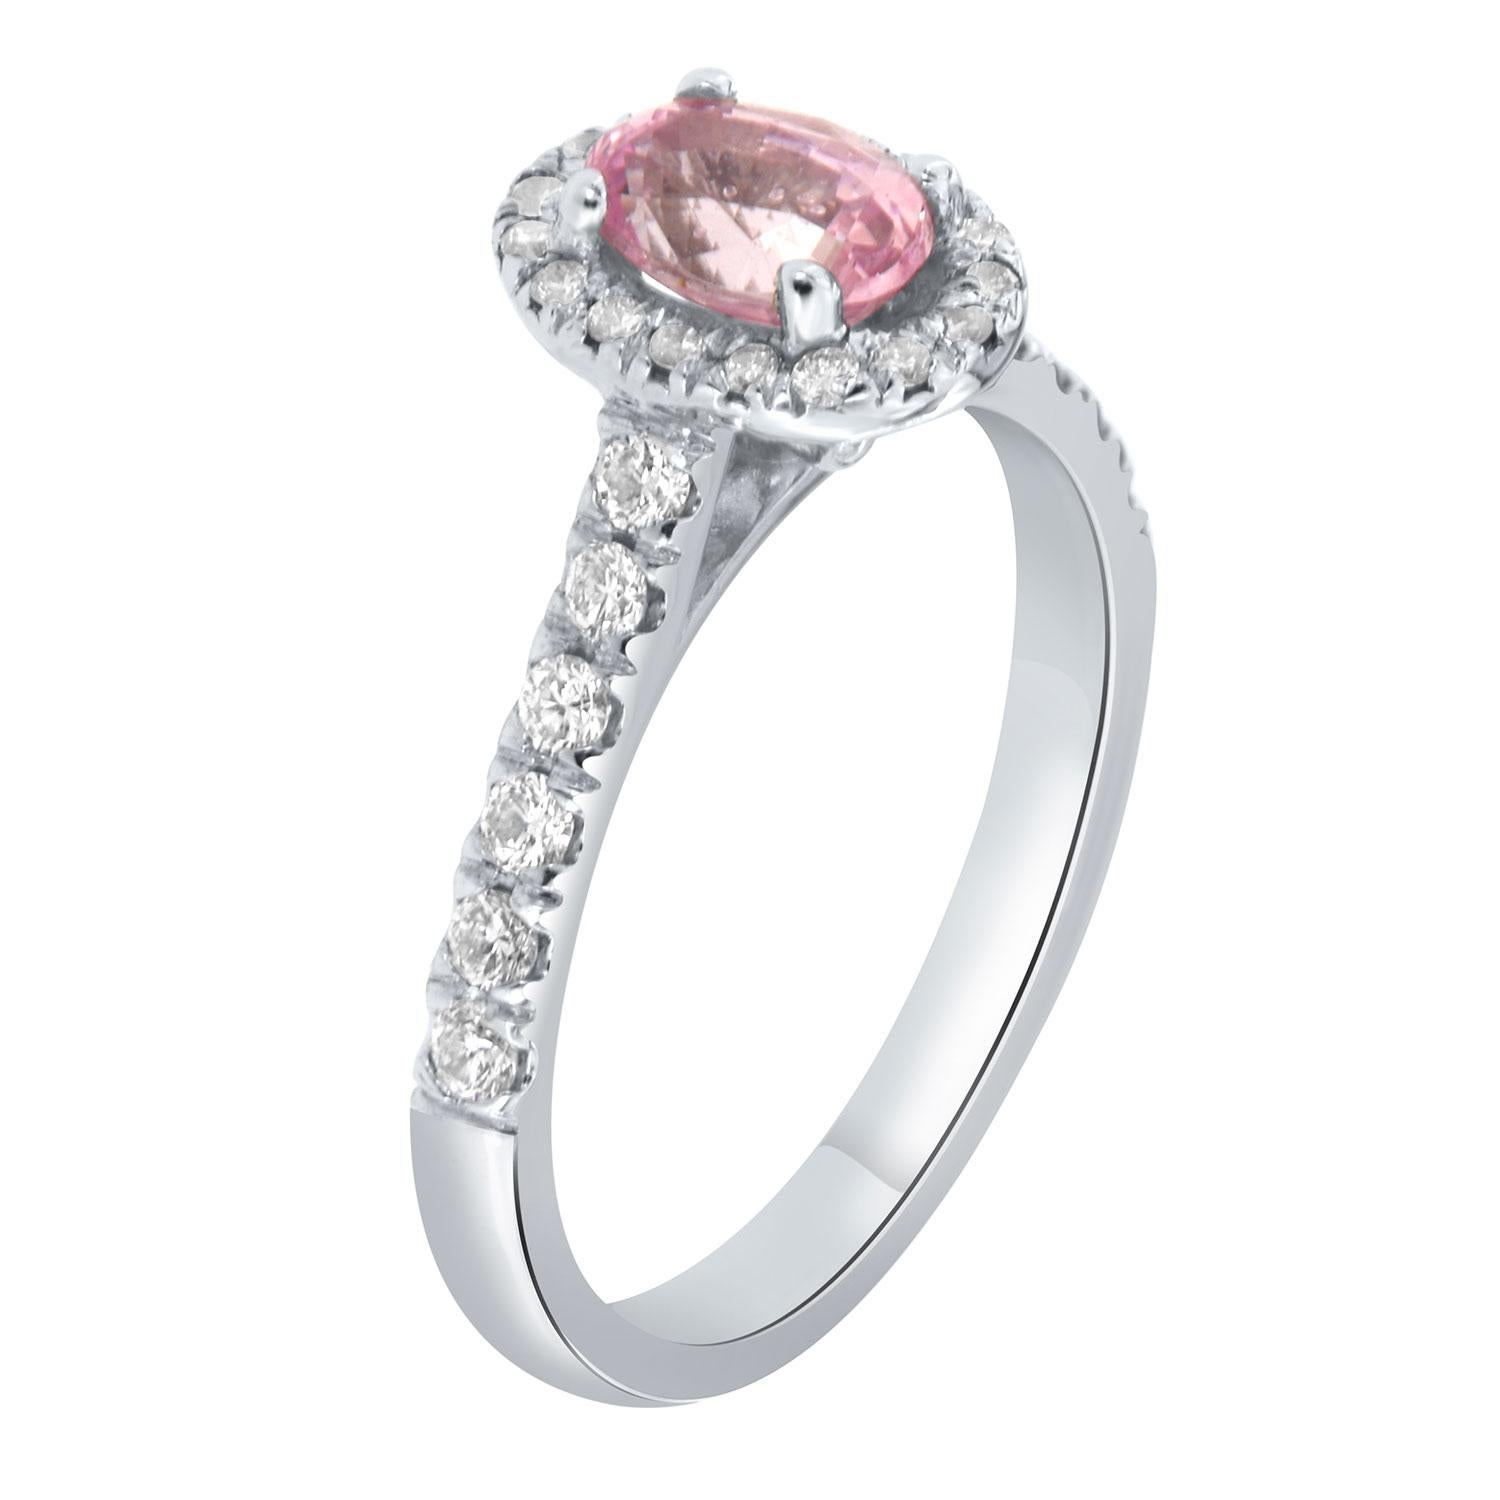 Dieser Platinring zeigt einen nicht erhitzten, runden 1,14 Karat Natursaphir in leuchtendem Rosa mit einem ausgezeichneten Glanz, umgeben von einem Halo aus runden Brillanten auf einem 2,5 mm breiten Diamantband. 
Das Gewicht des Diamanten beträgt